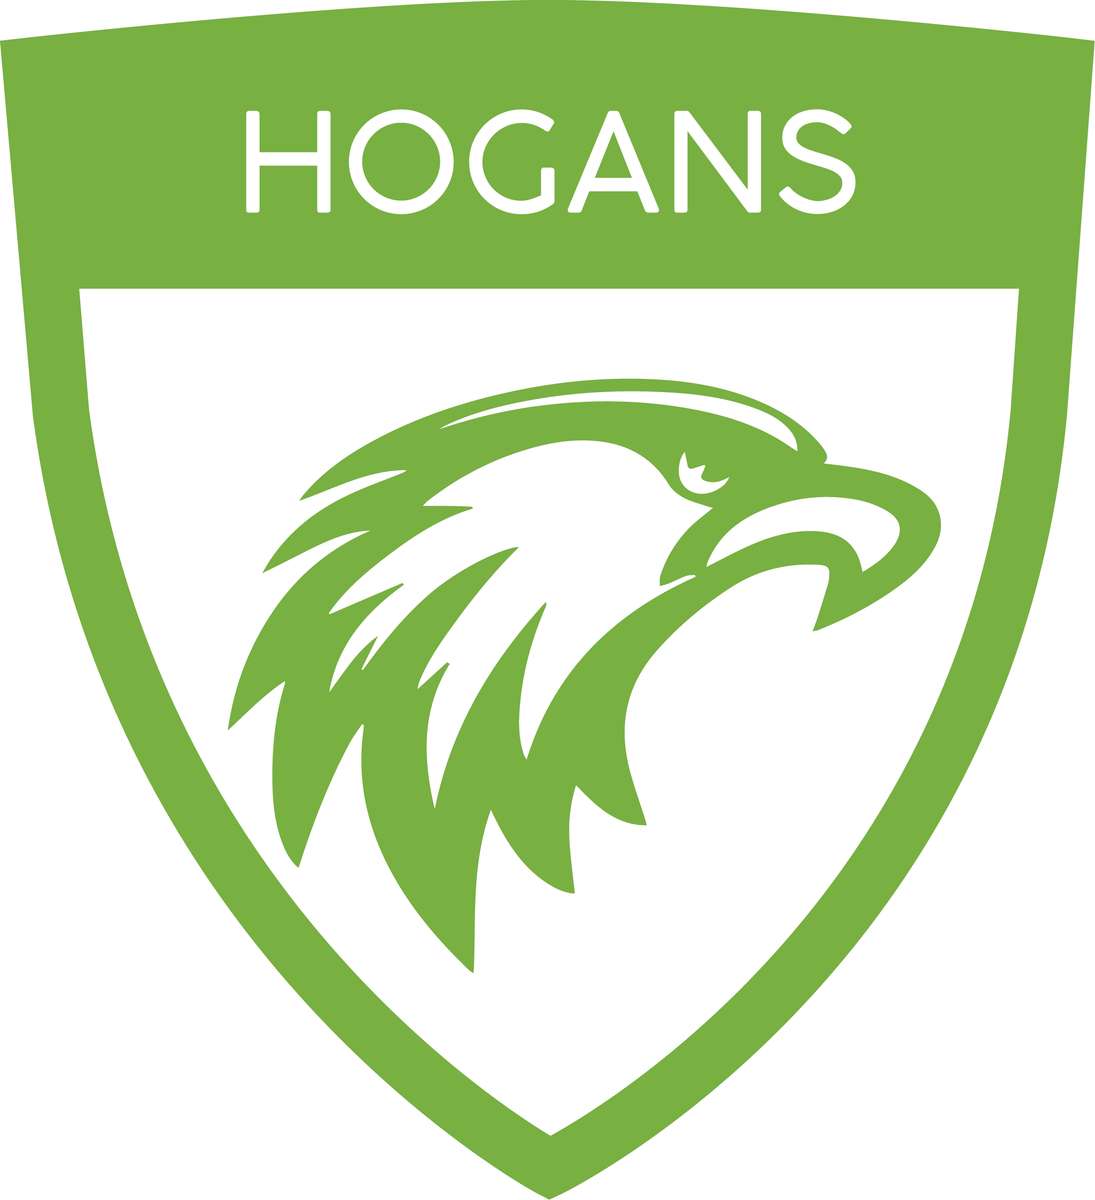 Hogans-Puzzle Online-Puzzle